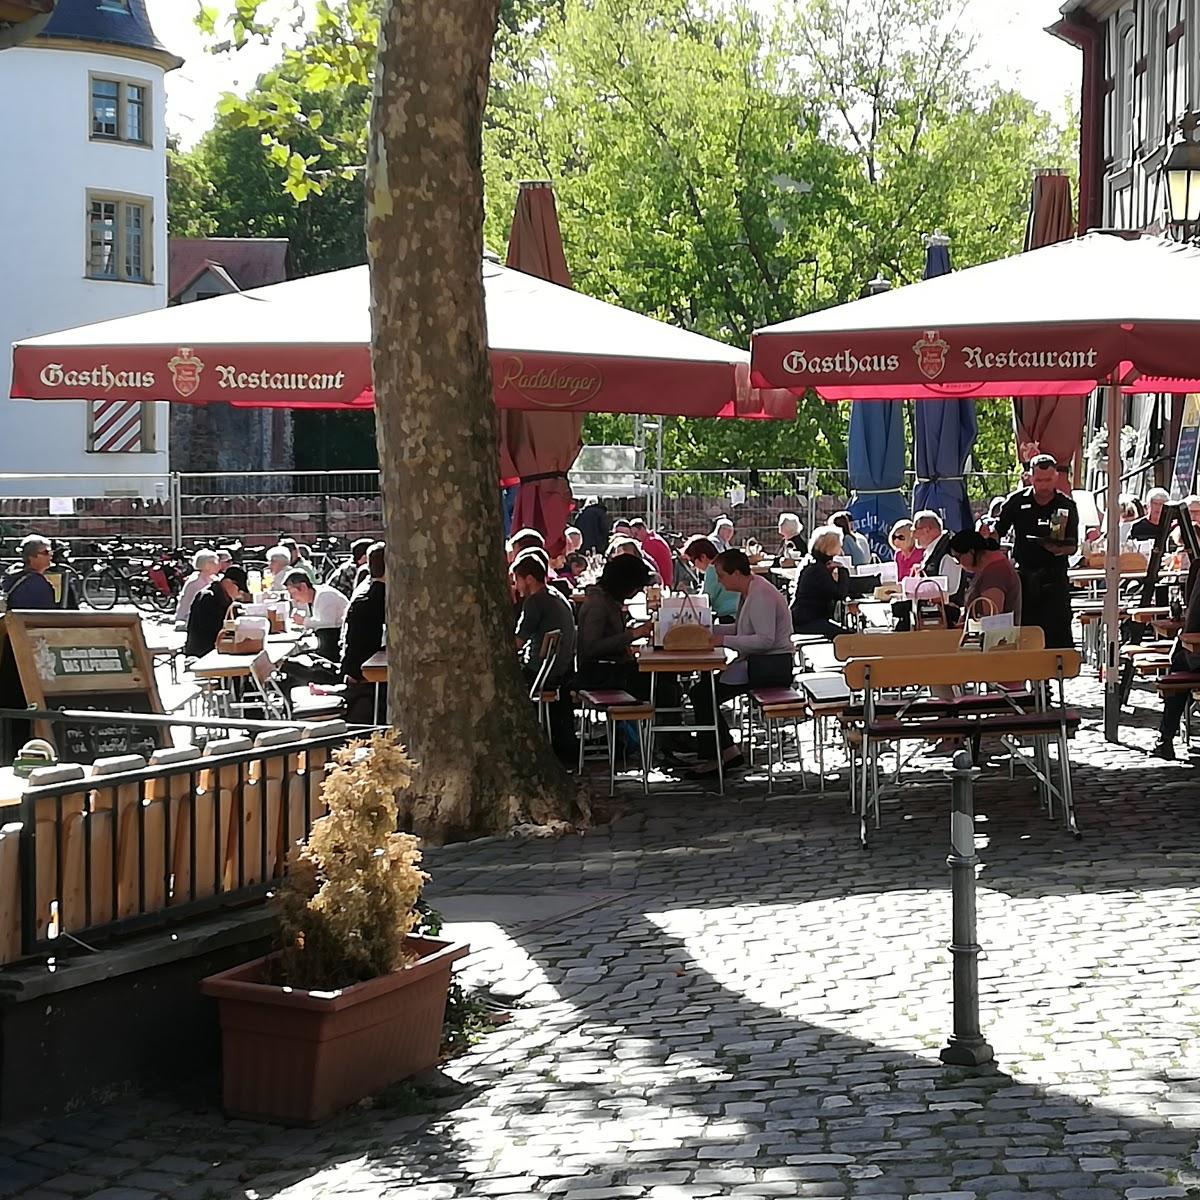 Restaurant "Gasthaus Zum Bären" in Frankfurt am Main